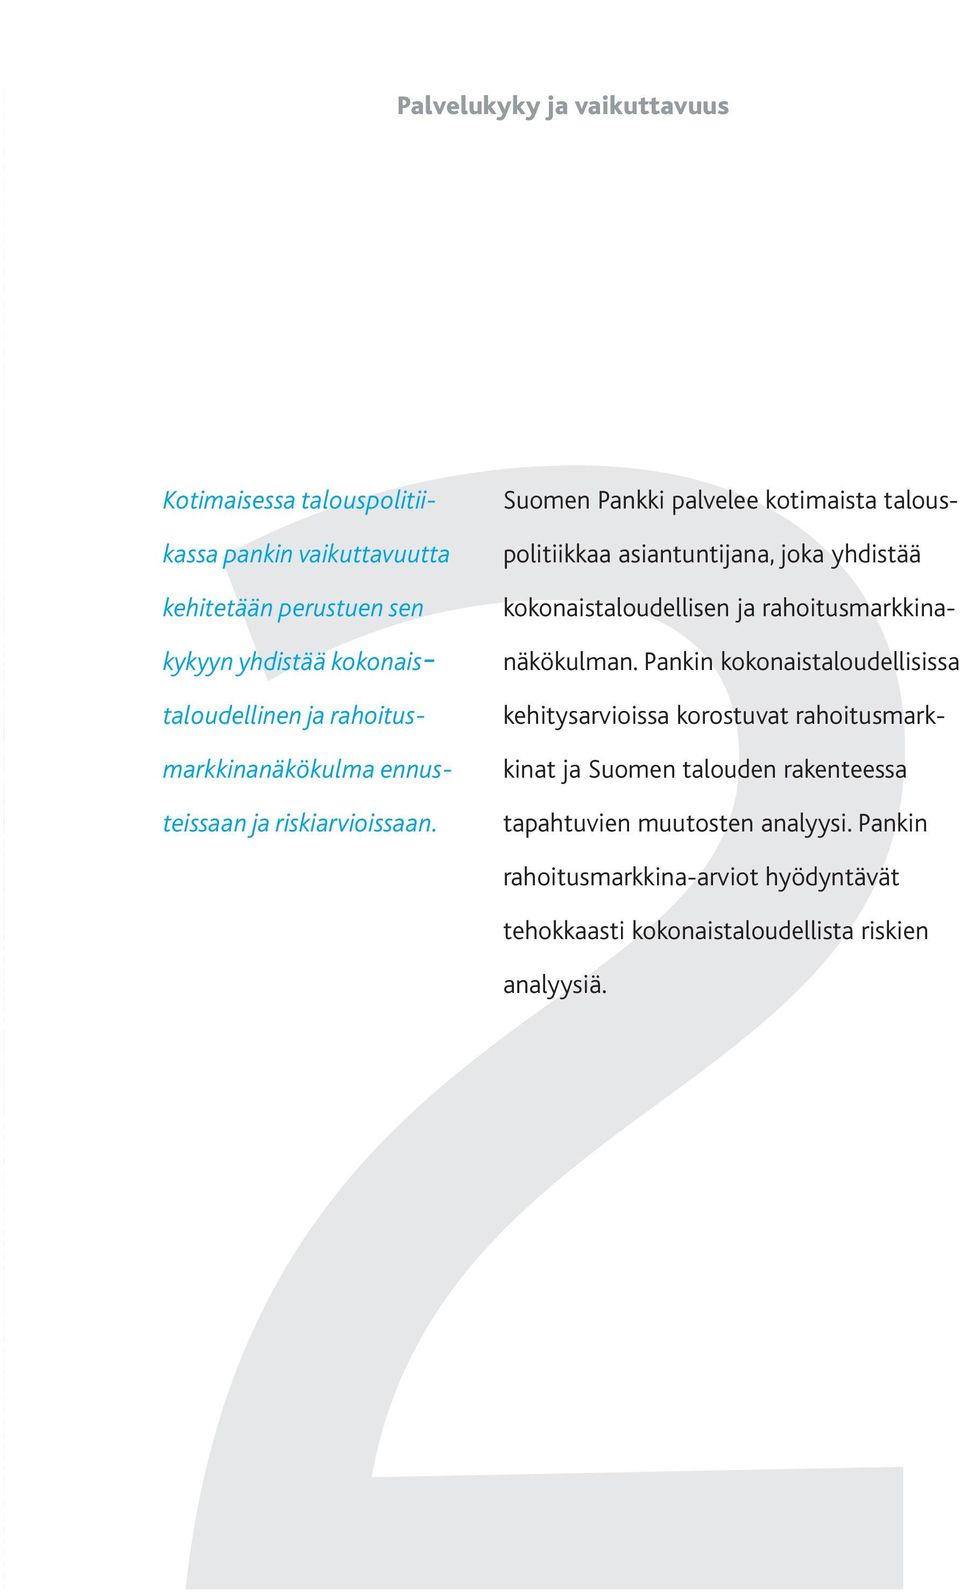 Suomen Pankki palvelee kotimaista talouspolitiikkaa asiantuntijana, joka yhdistää kokonais taloudellisen ja rahoitusmarkkinanäkökulman.